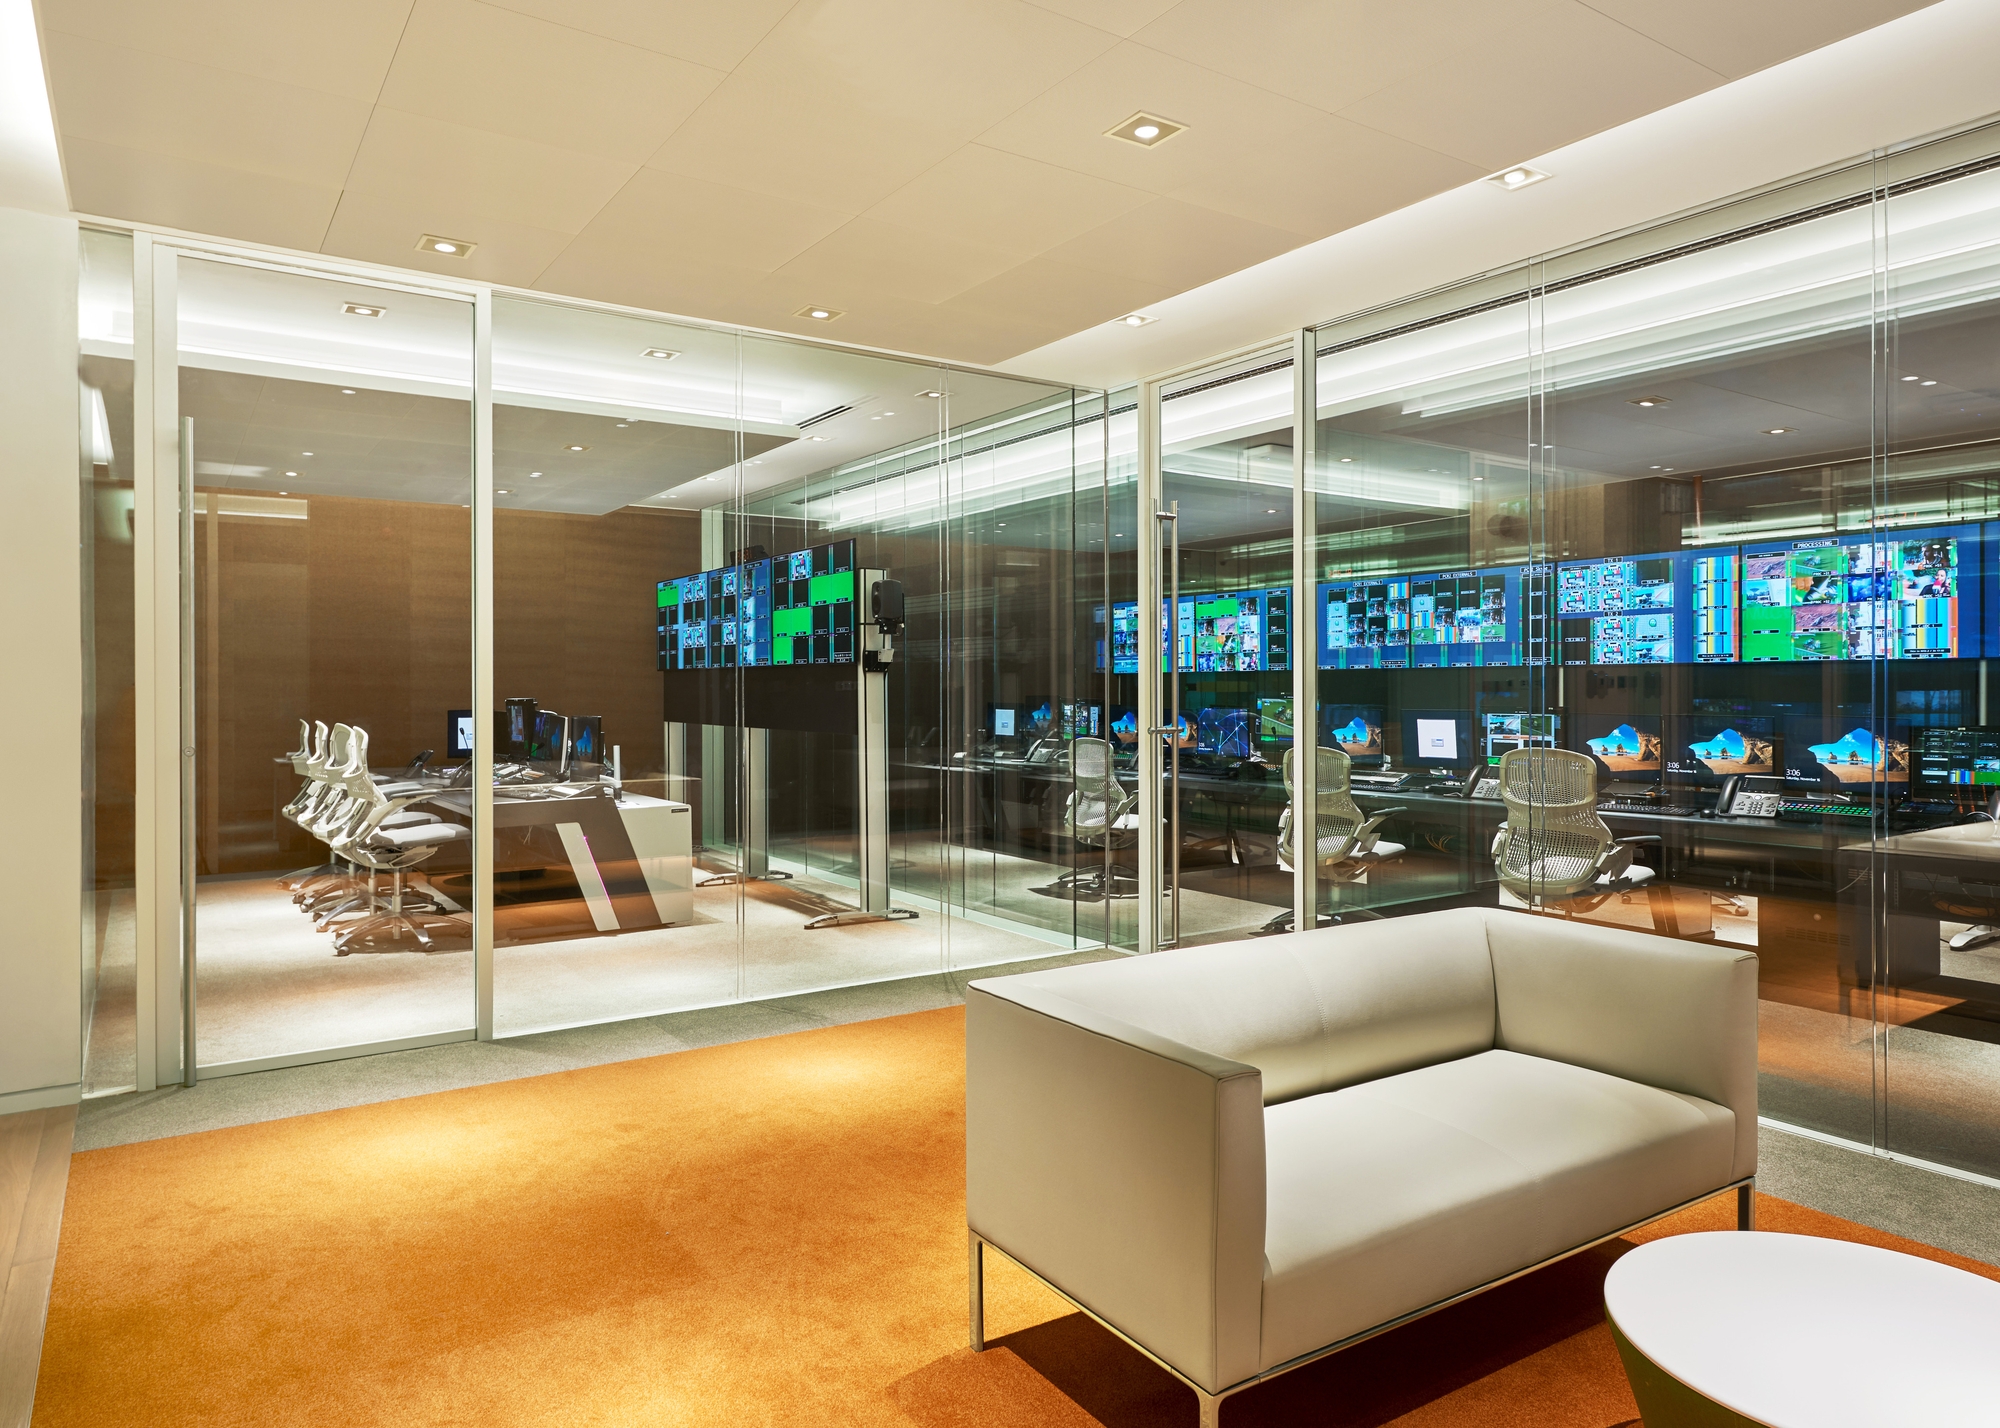 图片[10]|Asharq新闻办公室-迪拜|ART-Arrakis | 建筑室内设计的创新与灵感